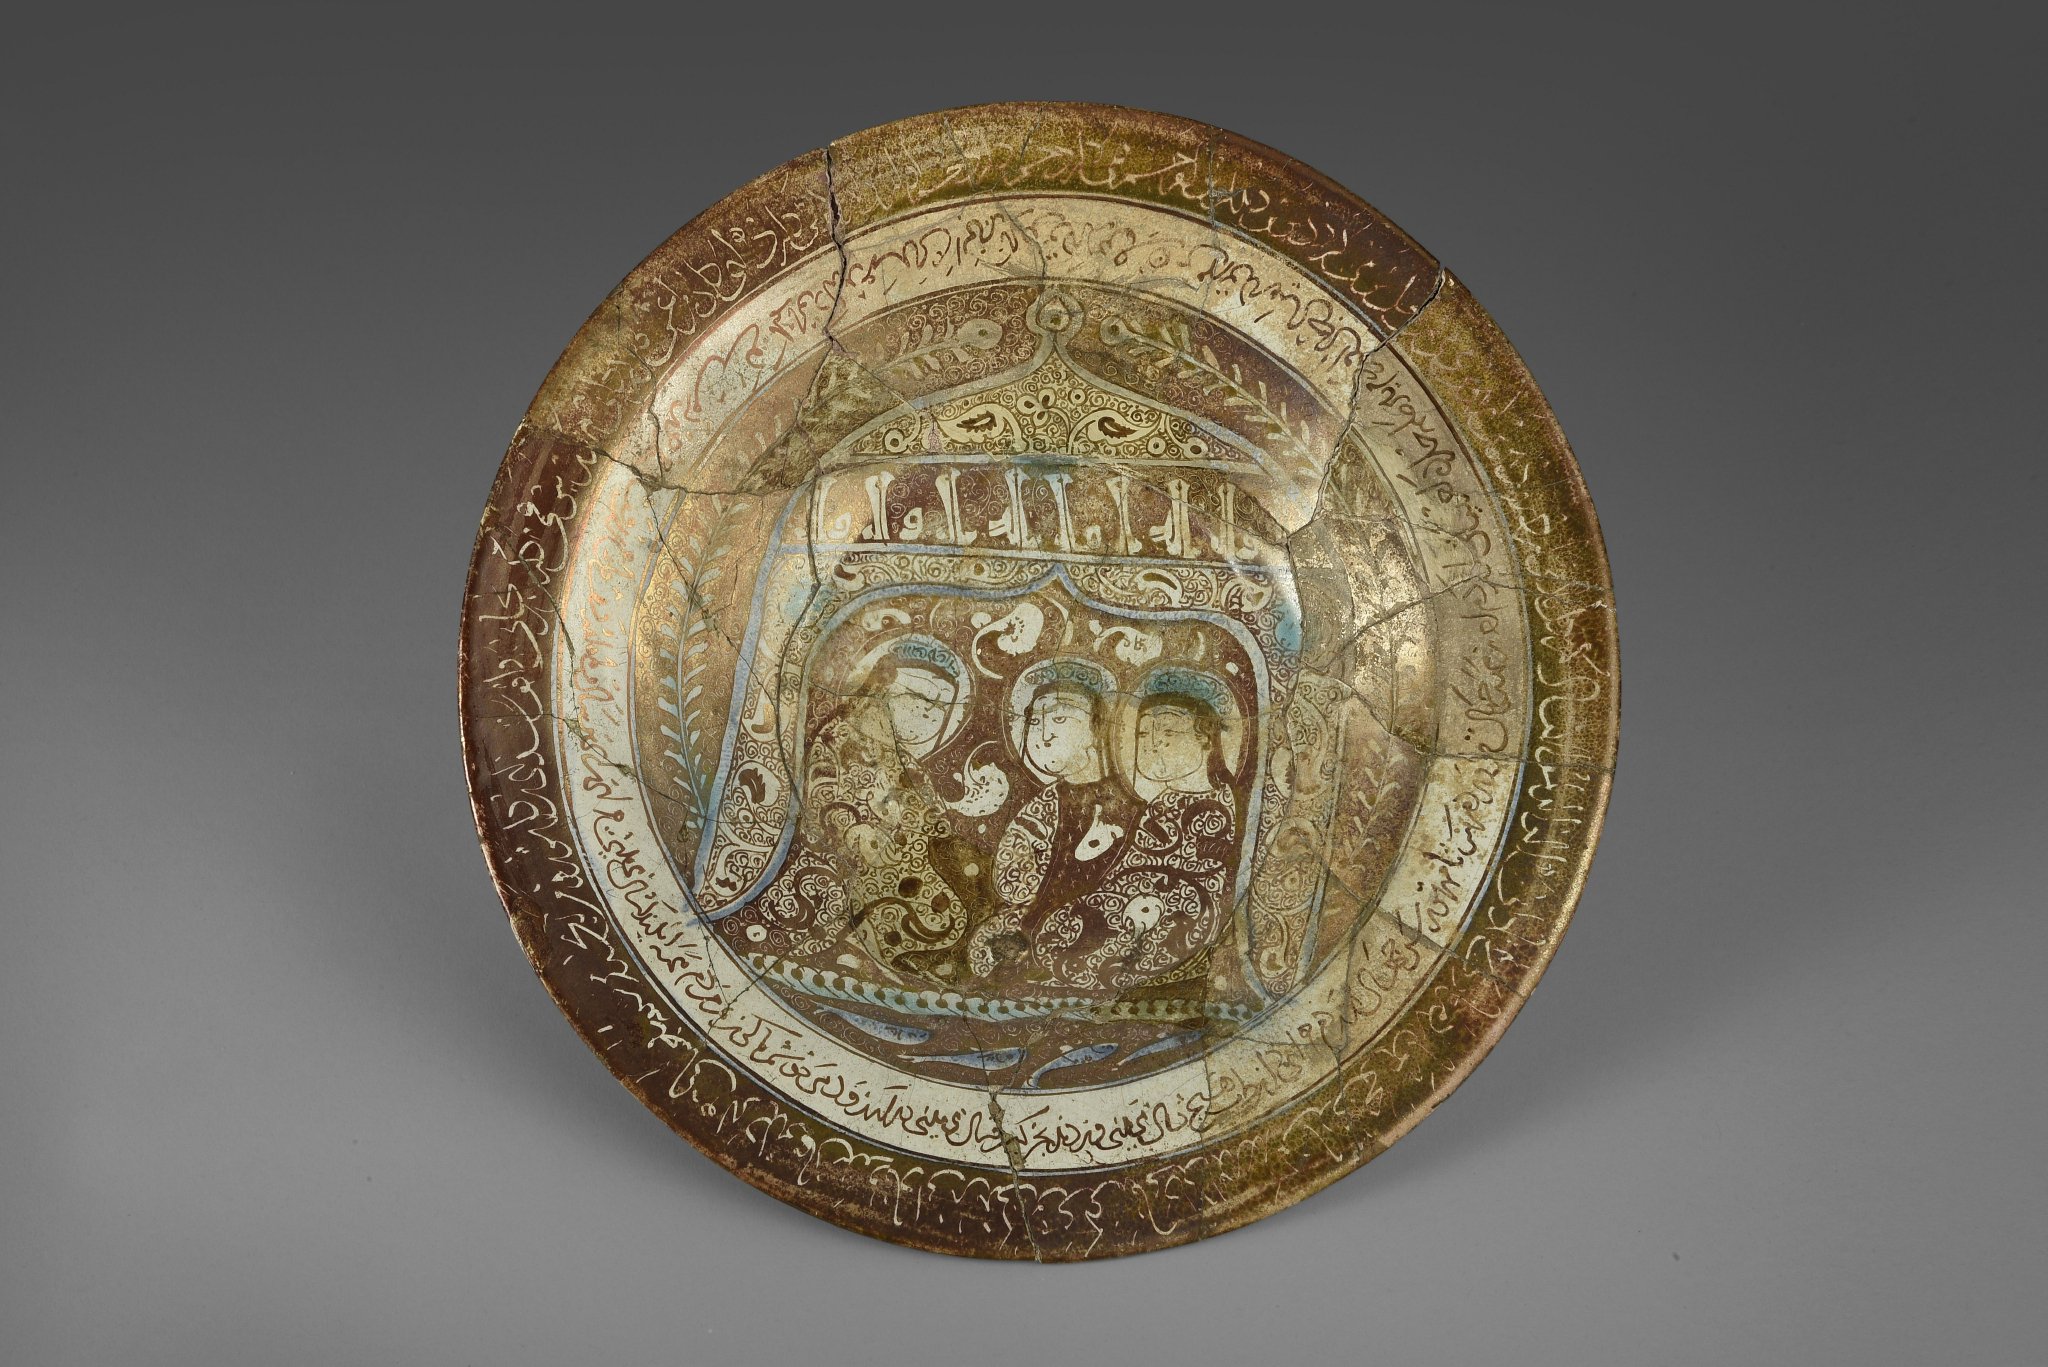 人物纹釉陶盘  公元13—14世纪（伊利汗王朝） 高6.3厘米，口径33.2厘米  戈勒斯坦省，戈尔甘  伊朗国家博物馆藏